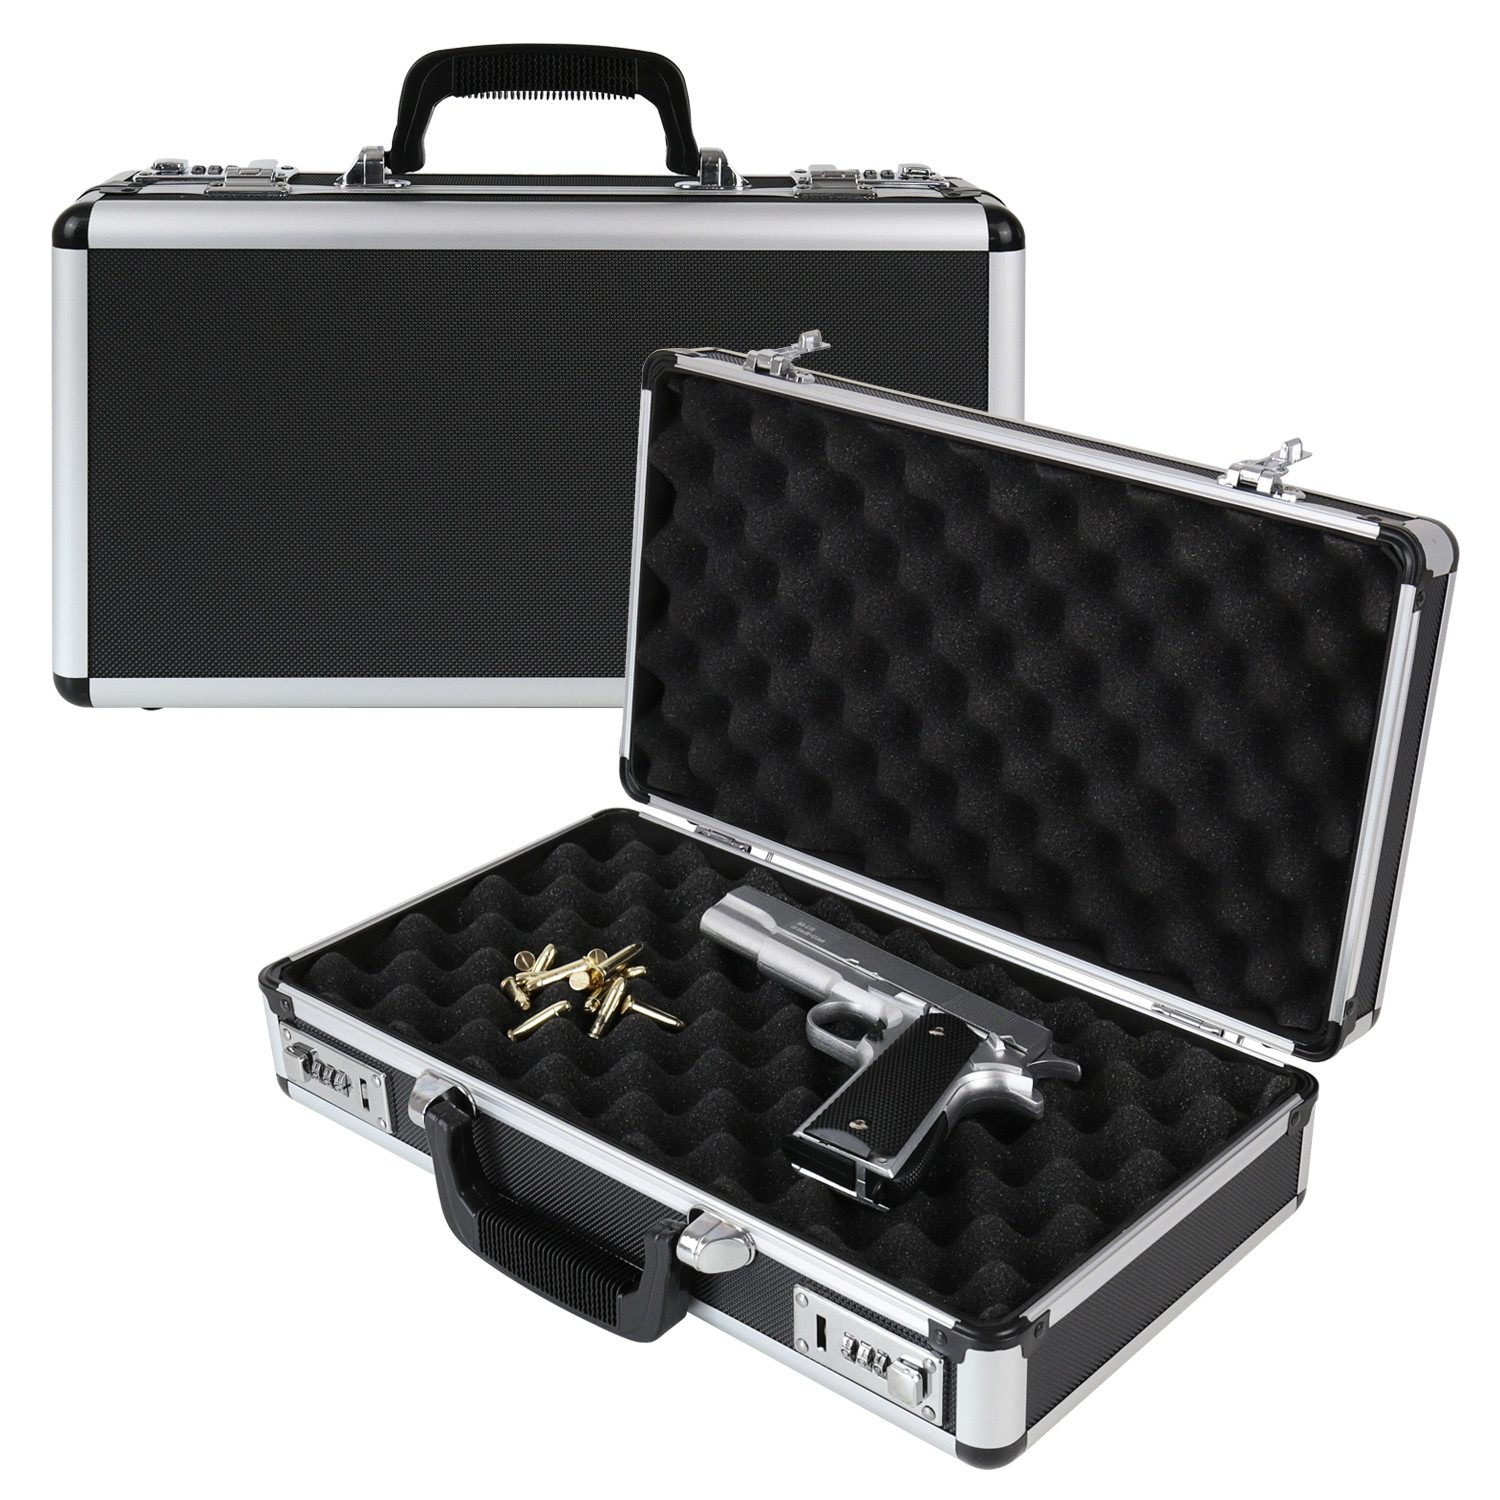 HMF Aufbewahrungsbox Waffenkoffer mit Zahlenschloss, Transportkoffer für Kurzwaffen, Dokumente und Kamera, 42 x 26 x 12 cm, schwarz